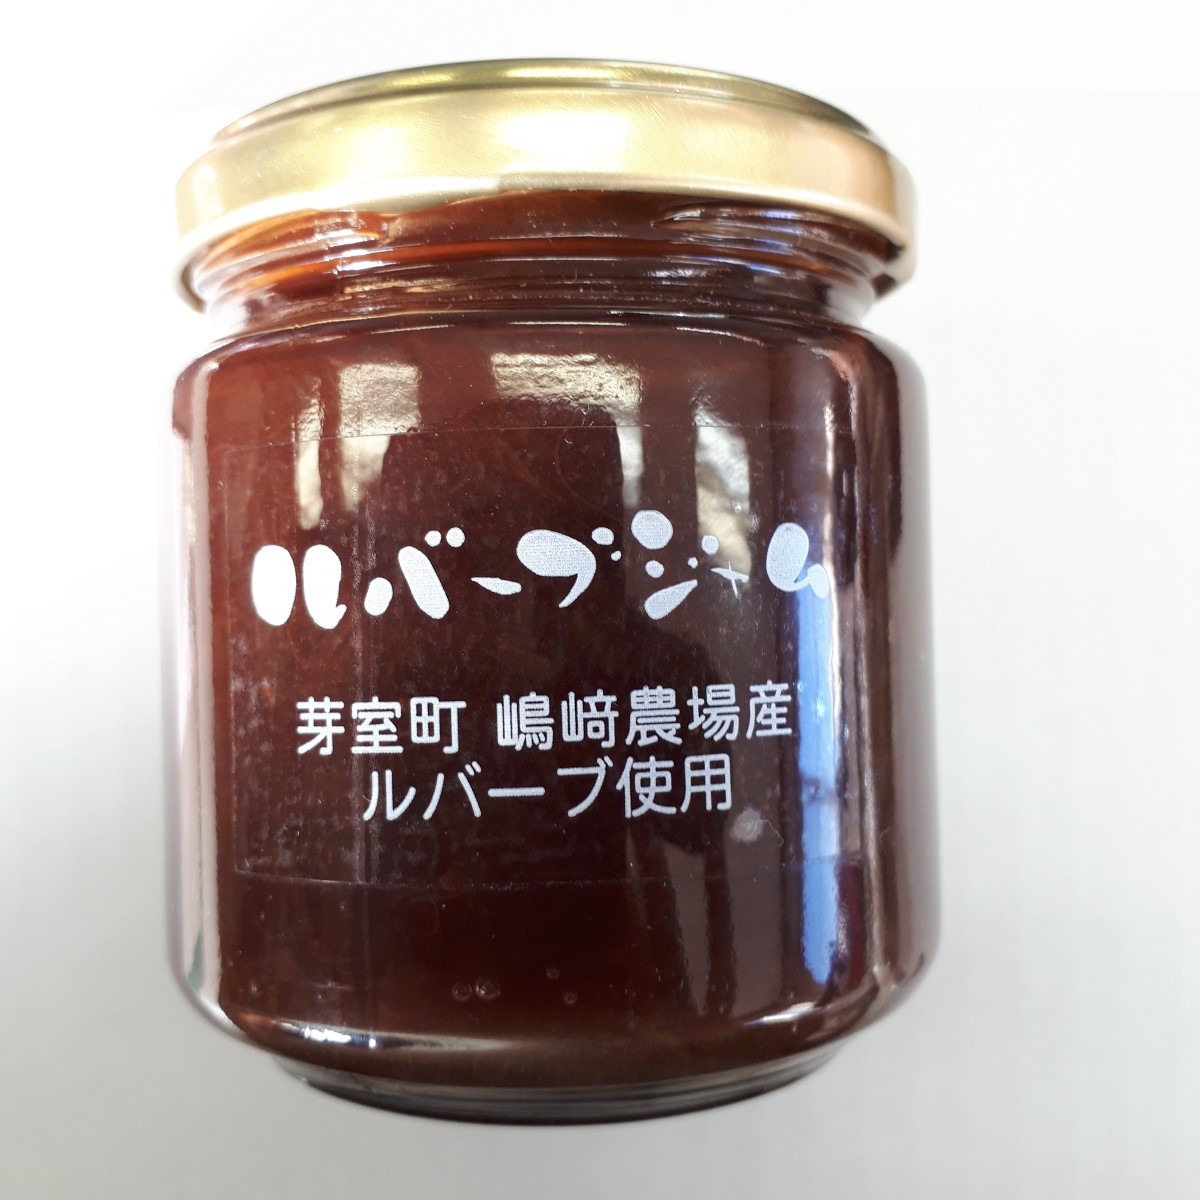 楽天市場 保存料 着色料 香料不使用 北海道十勝産ルバーブジャム2g ネットショップゆうせん